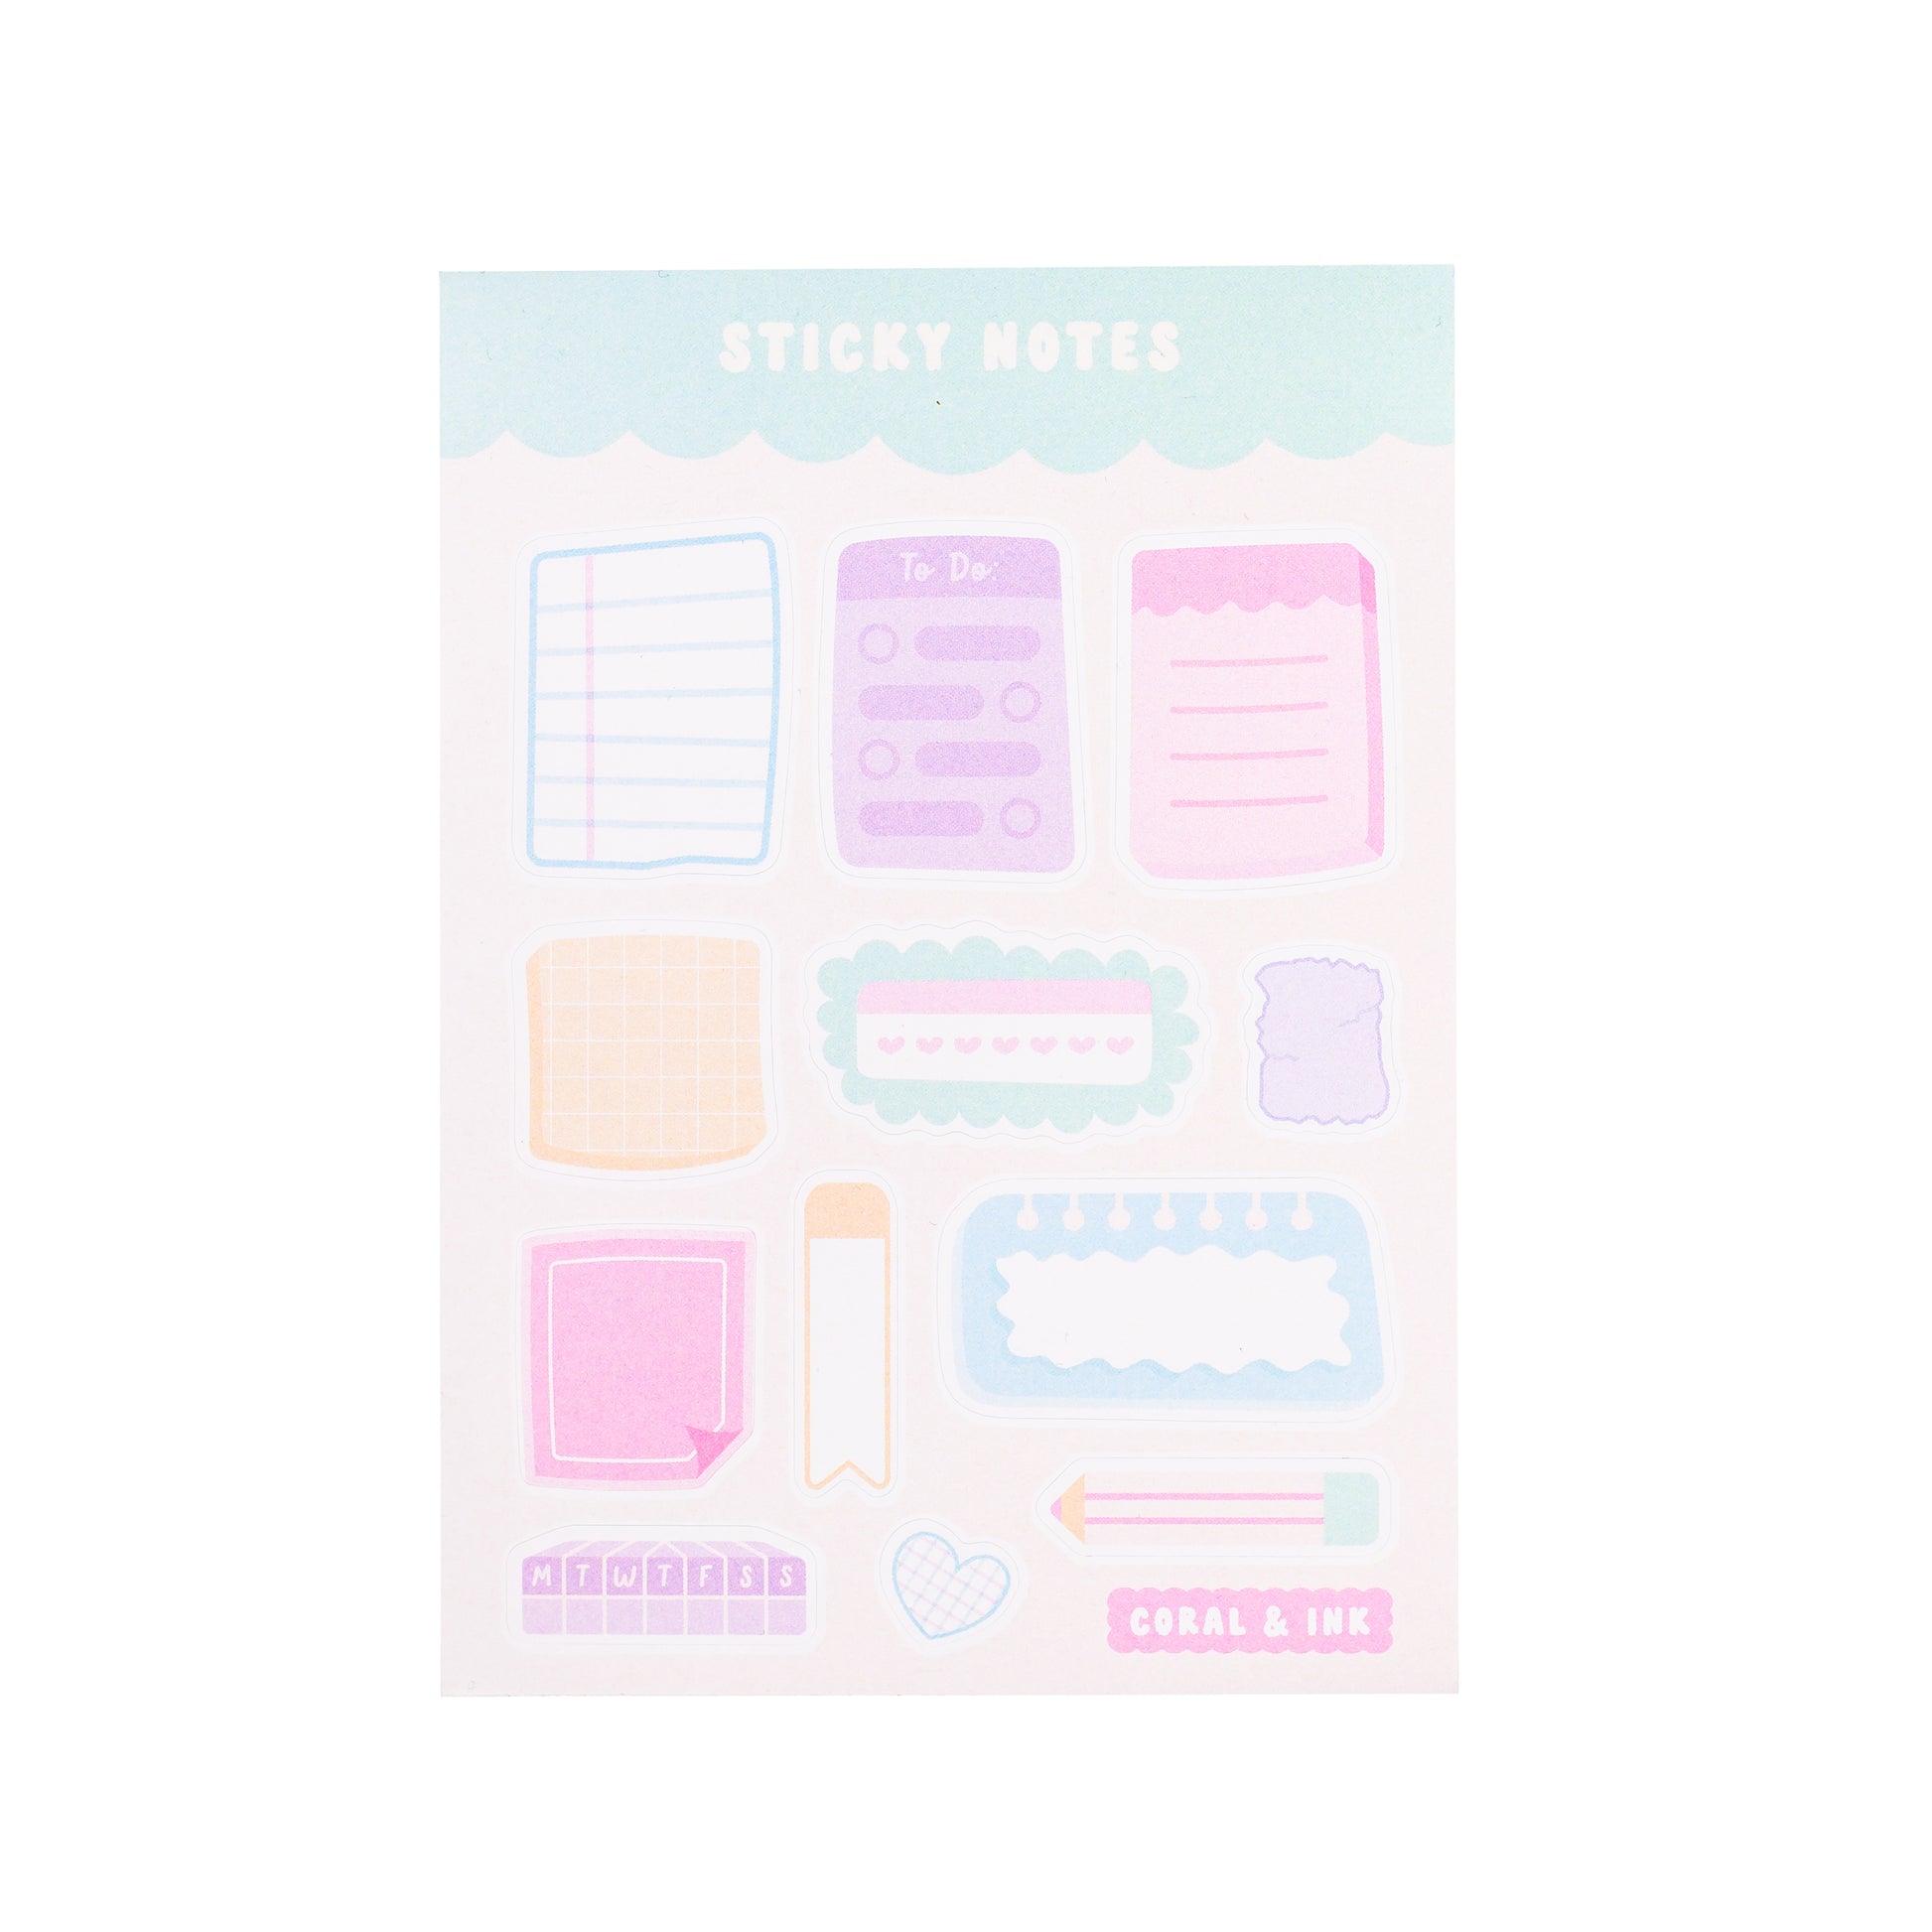 Sticky Notes Sticker Sheet